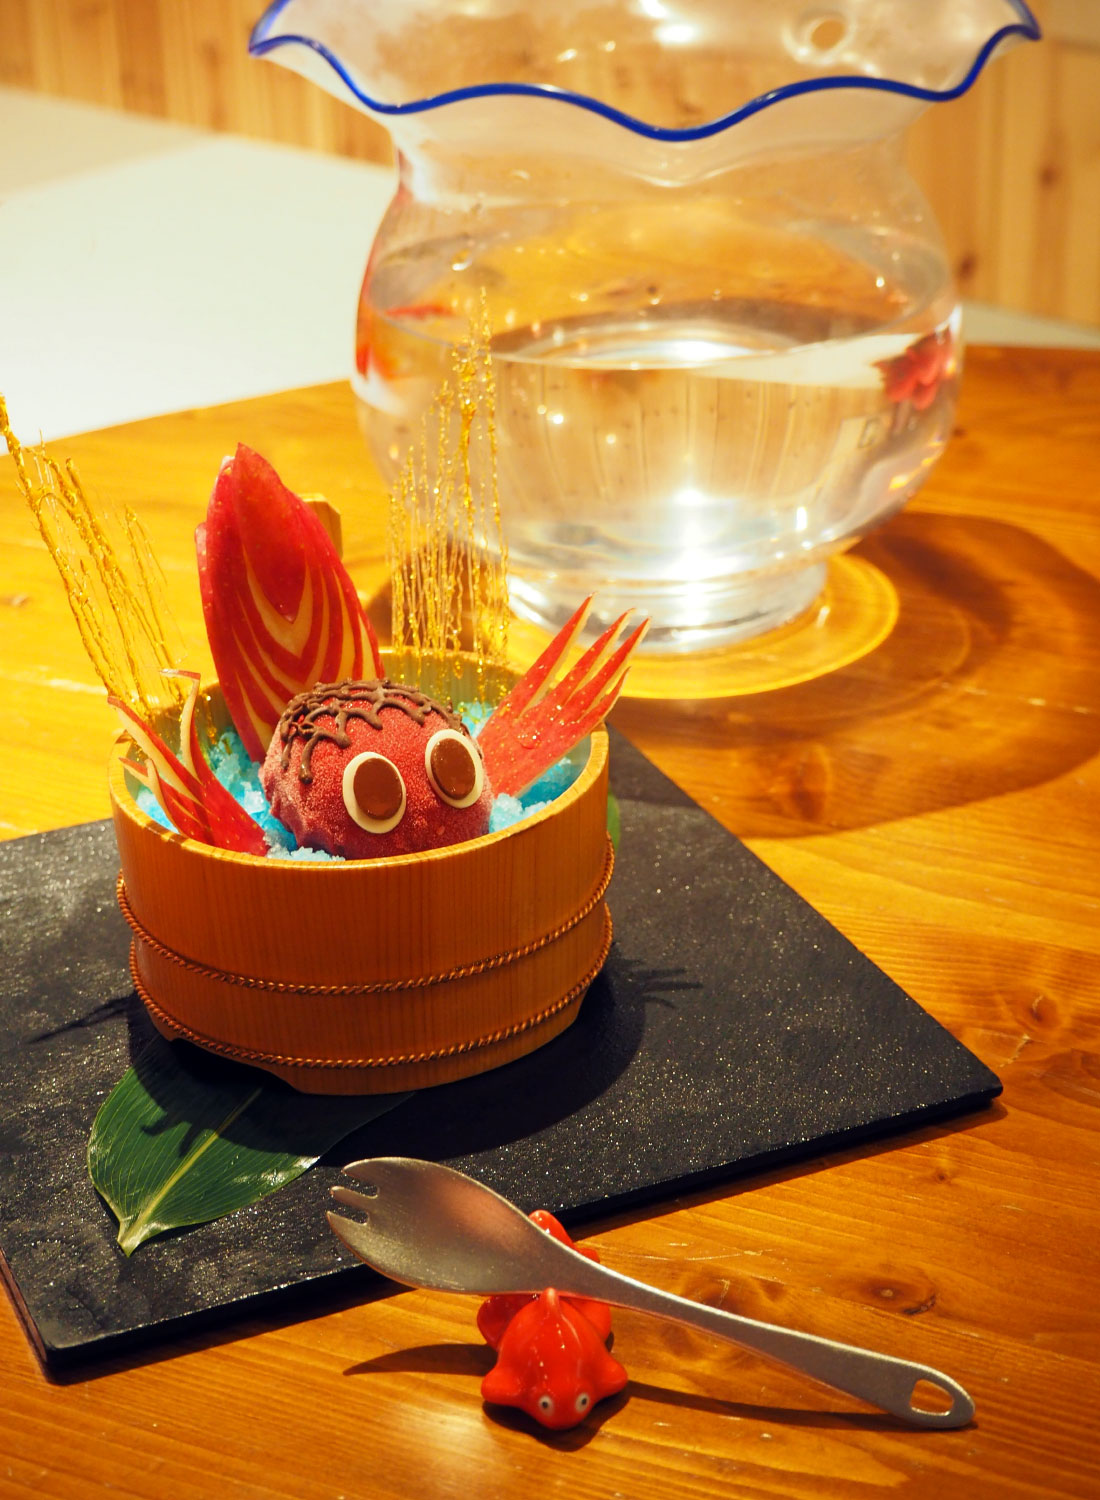 シャーベットとりんご、飴細工で金魚ねぷたが表現されている「金魚ねぷたアイス」。